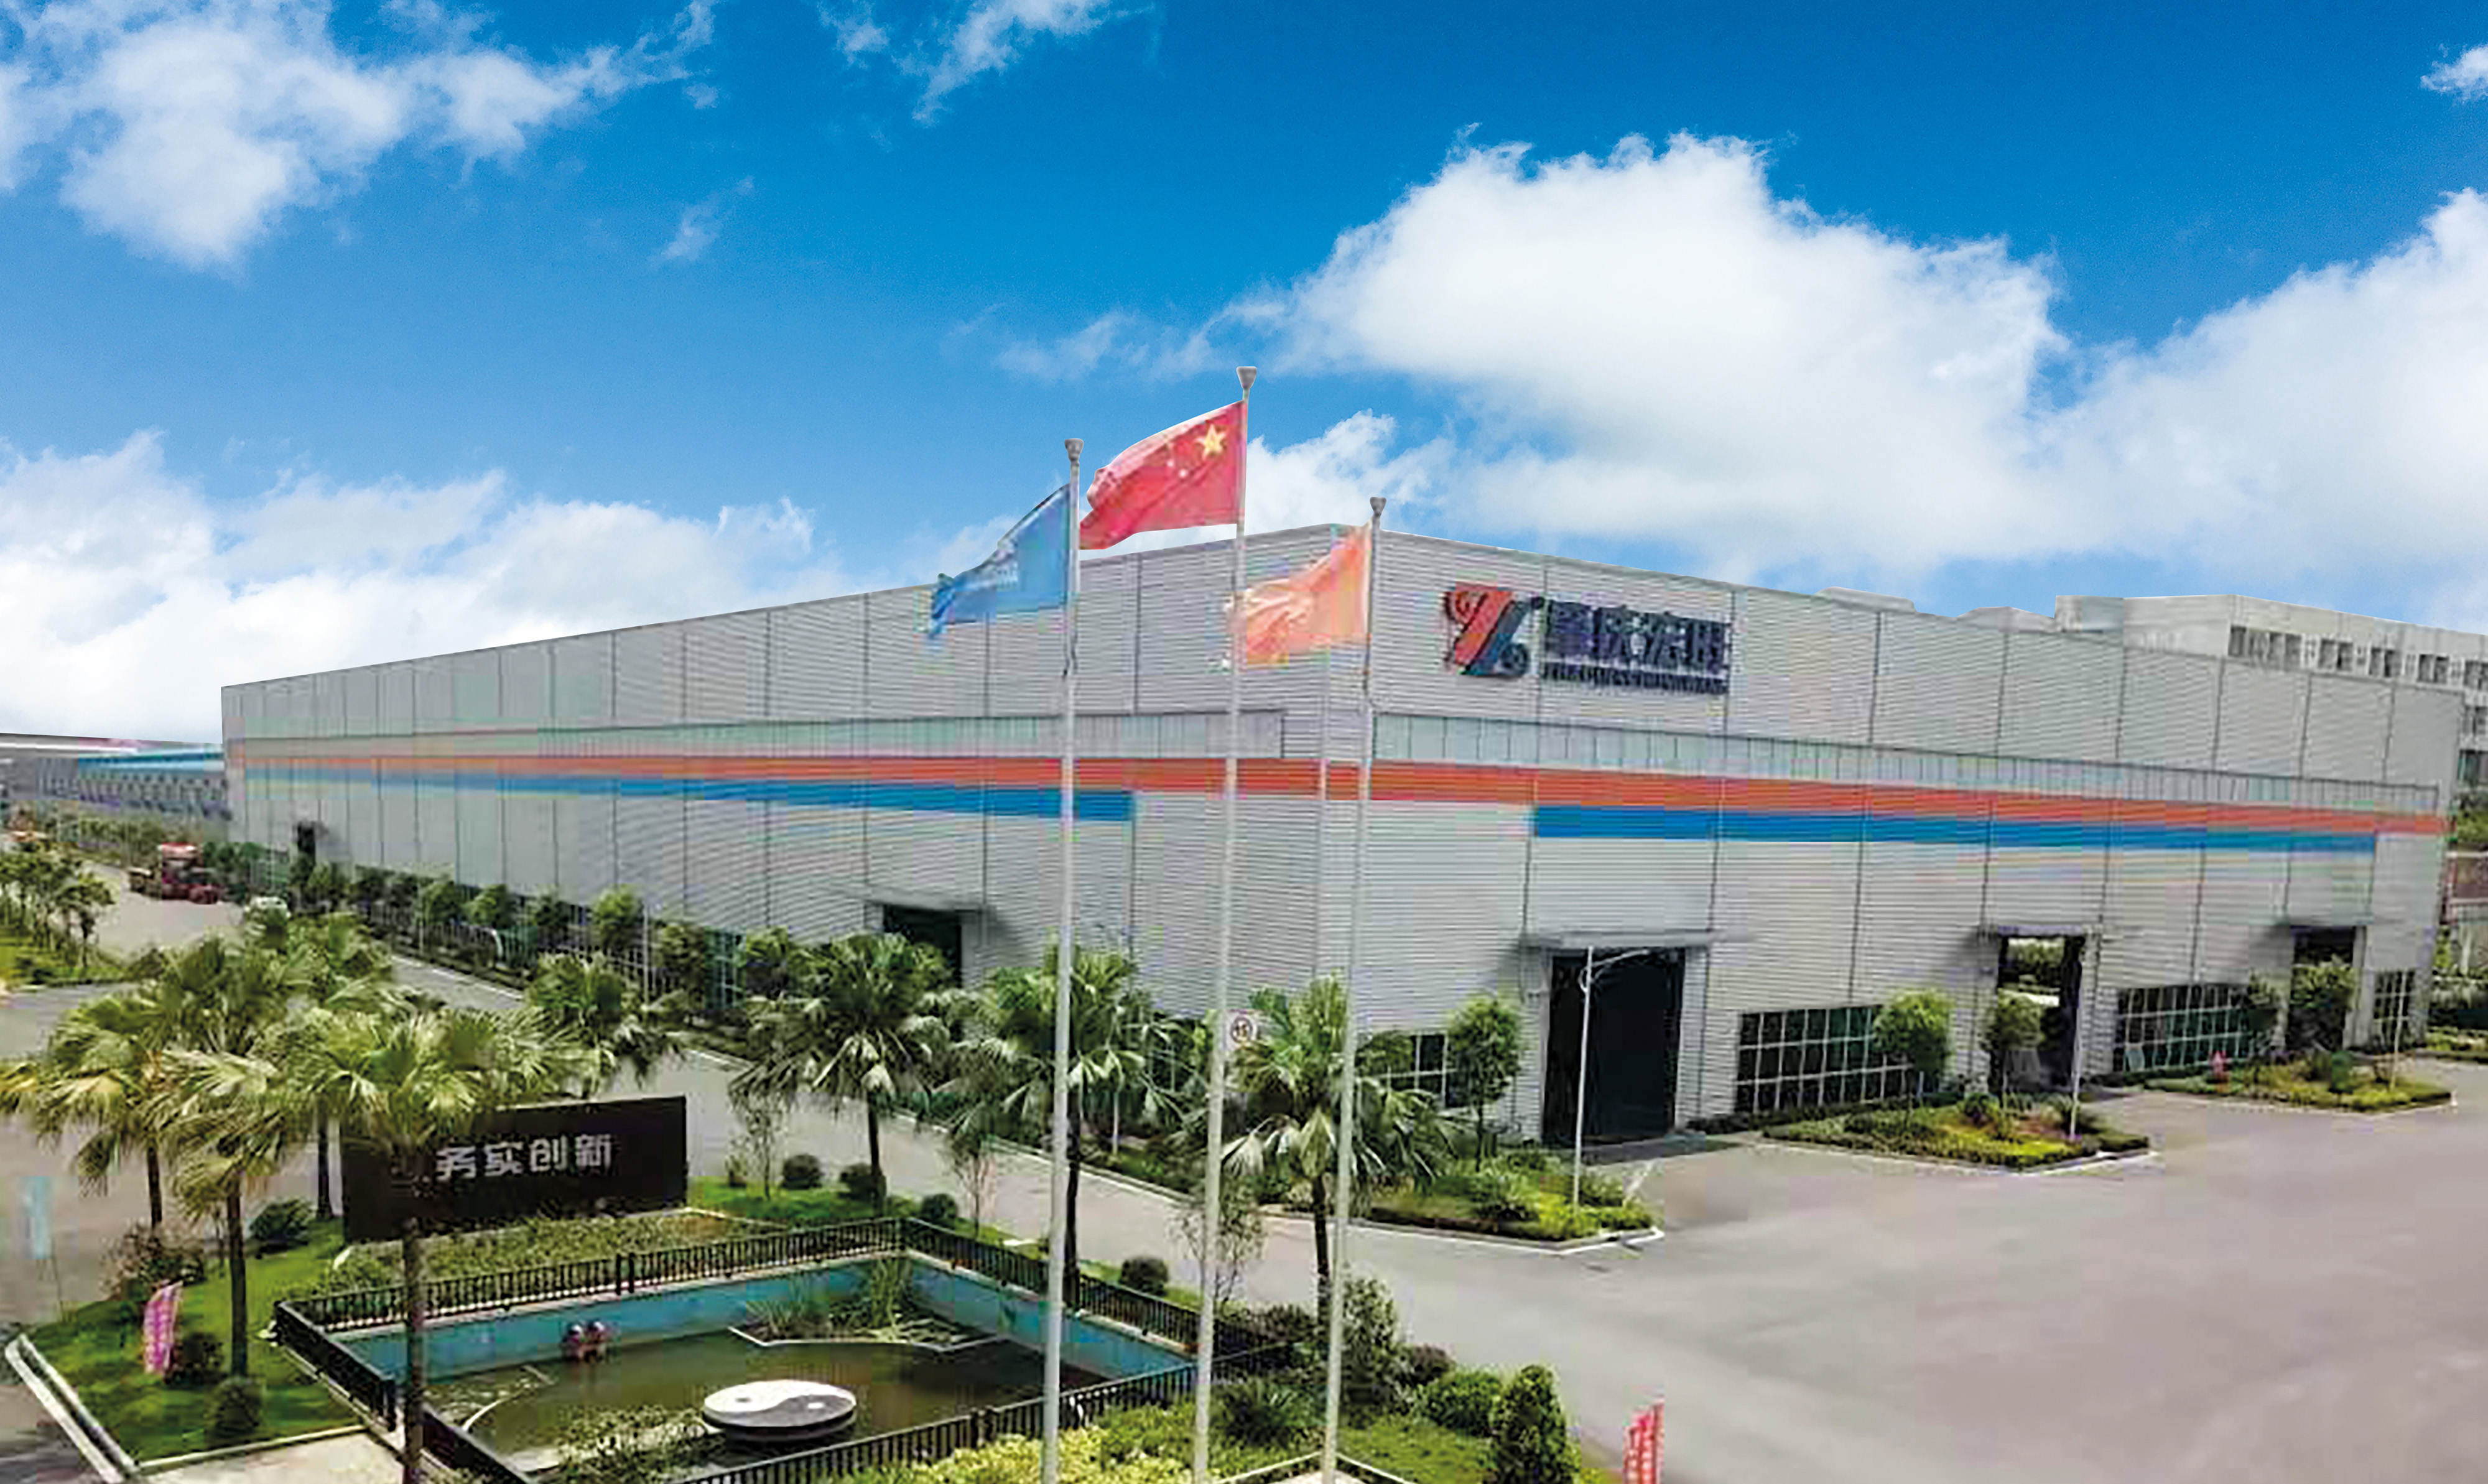 Η Foshan Hermdeco steel co., LTD., Που ιδρύθηκε το 2006, ανήκει στον όμιλο hongwang και έχει δεσμευτεί για την καινοτομία και την ποιότητα του ανοξείδωτου χάλυβα για περισσότερα από 10 χρόνια. Προς το παρόν, η εταιρεία έχει εξελιχθεί σε ένα σύνολο σχεδιασμού υλικών από ανοξείδωτο χάλυβα , μεταποίηση ως μία από τις μεγάλες ολοκληρωμένες επιχειρήσεις.